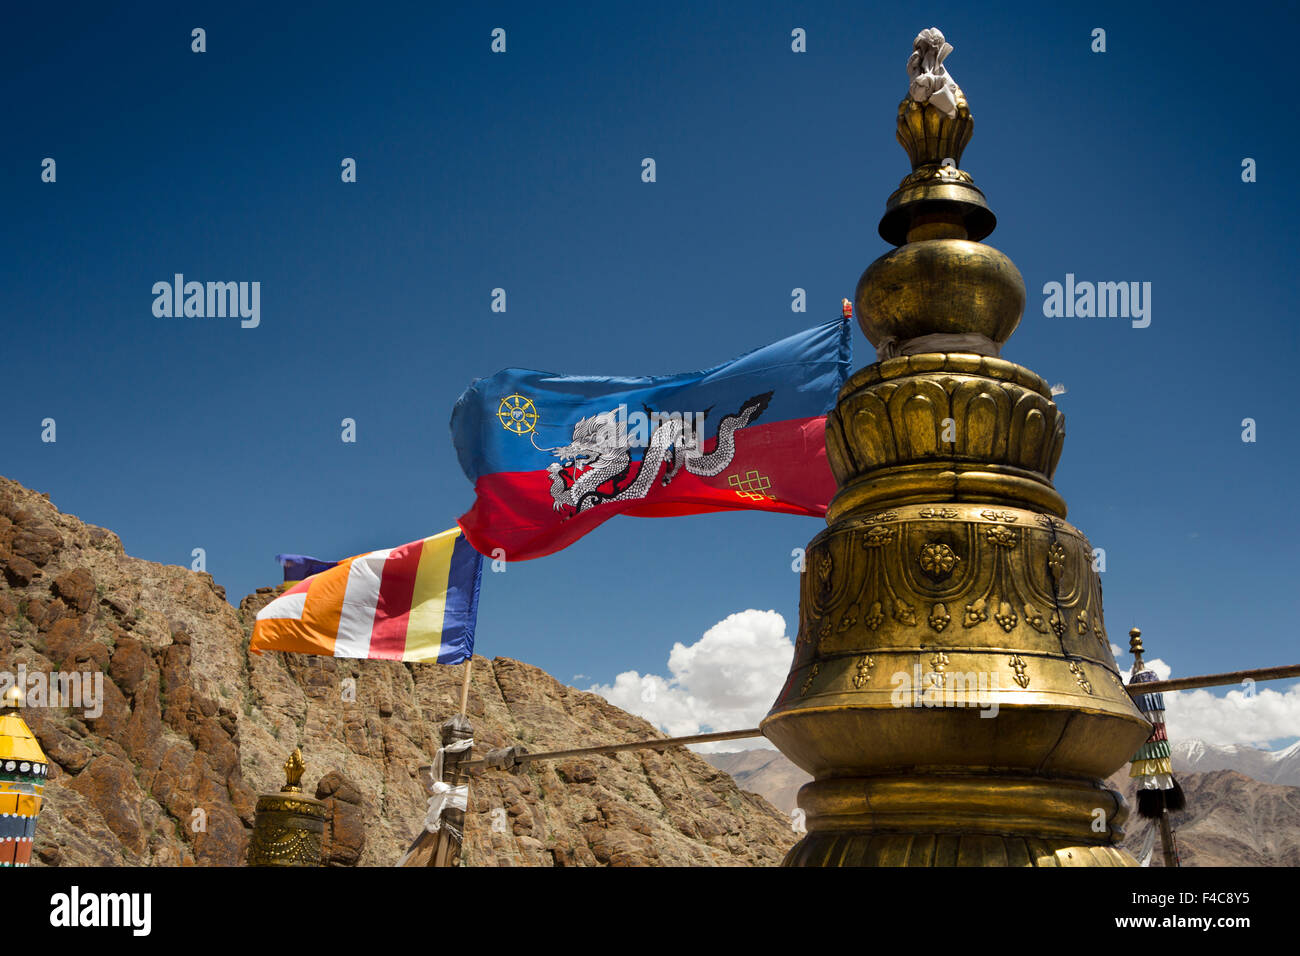 L'Inde, le Jammu-et-Cachemire, Ladakh, Hemis Gompa, monastère bouddhiste tibétain de l'Inde et de la tradition Drukpa drapeaux flottants du toit Banque D'Images